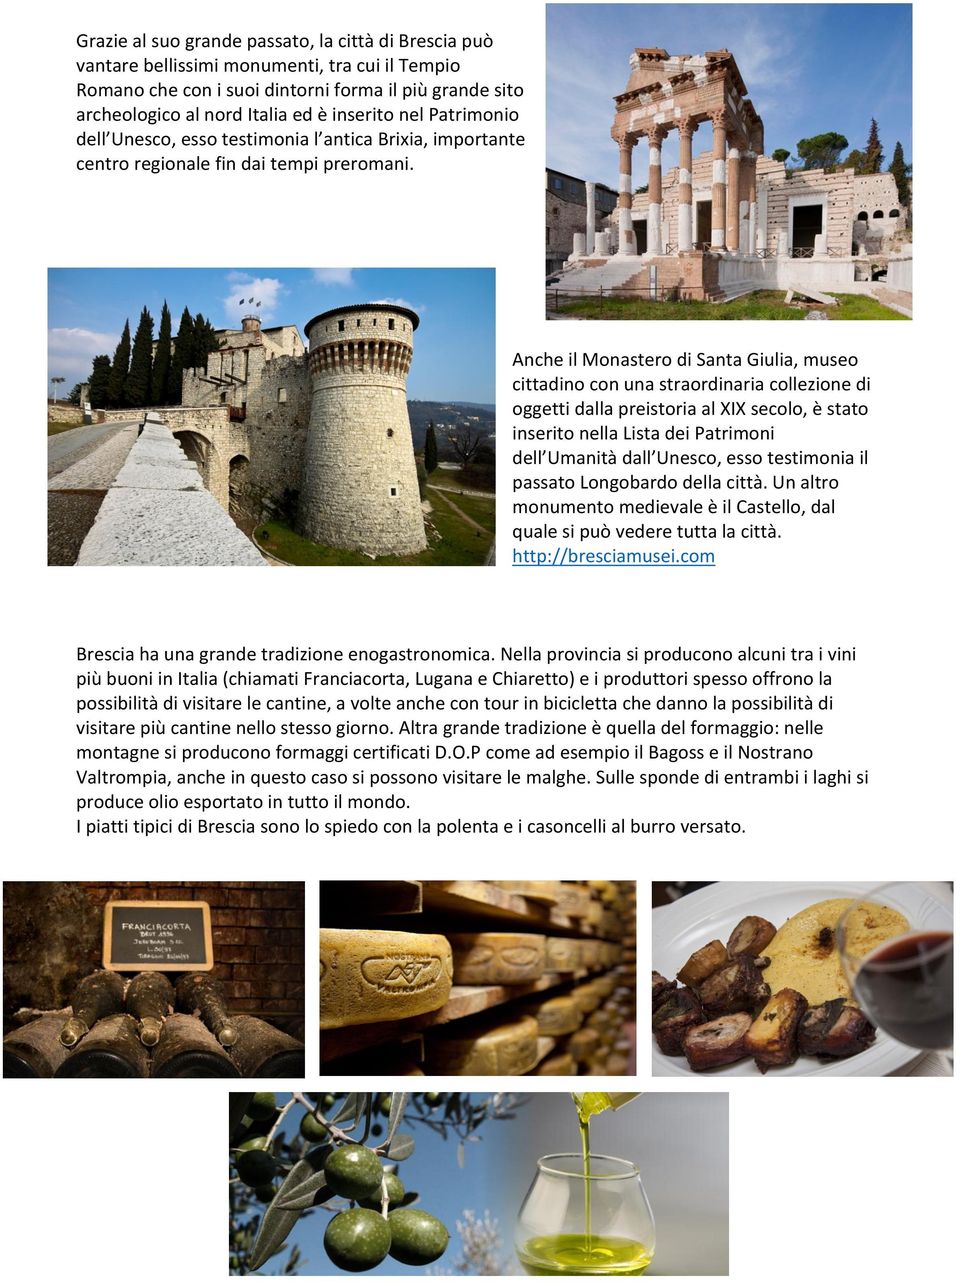 Anche il Monastero di Santa Giulia, museo cittadino con una straordinaria collezione di oggetti dalla preistoria al XIX secolo, è stato inserito nella Lista dei Patrimoni dell Umanità dall Unesco,